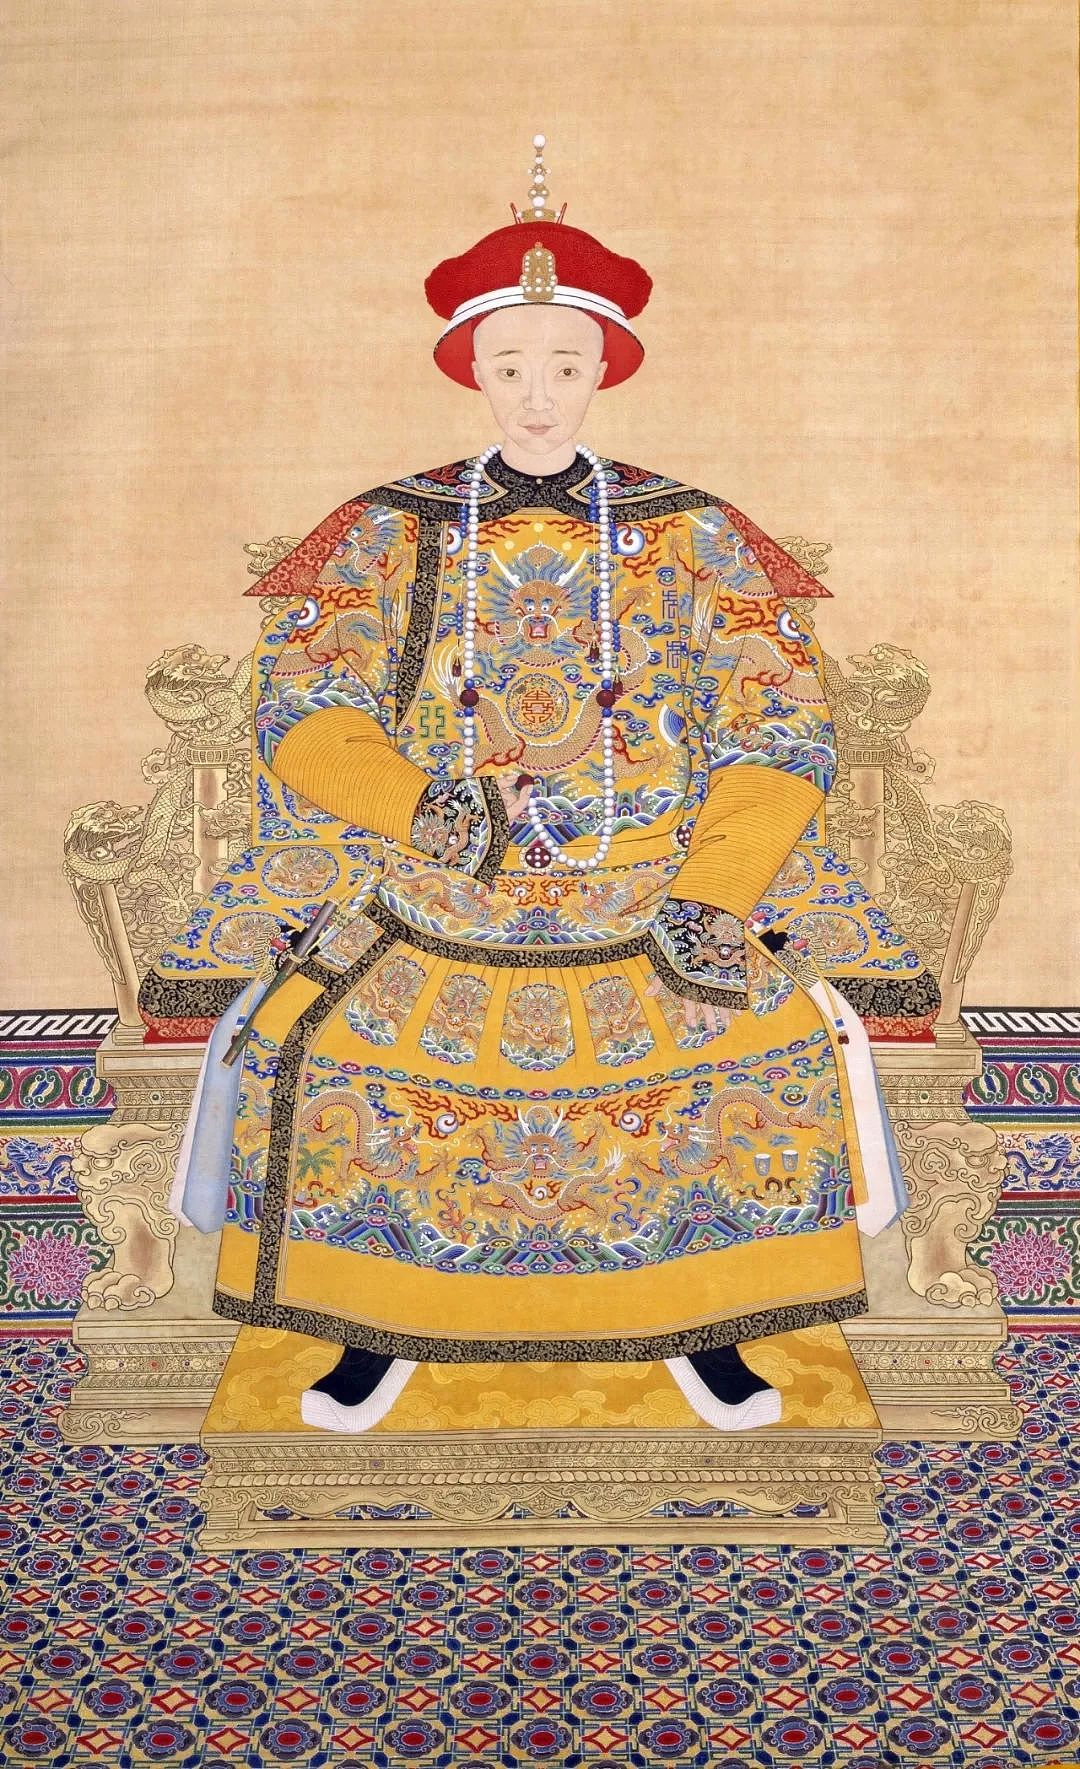 慈禧太后和她统治中国的政治模式 - 3